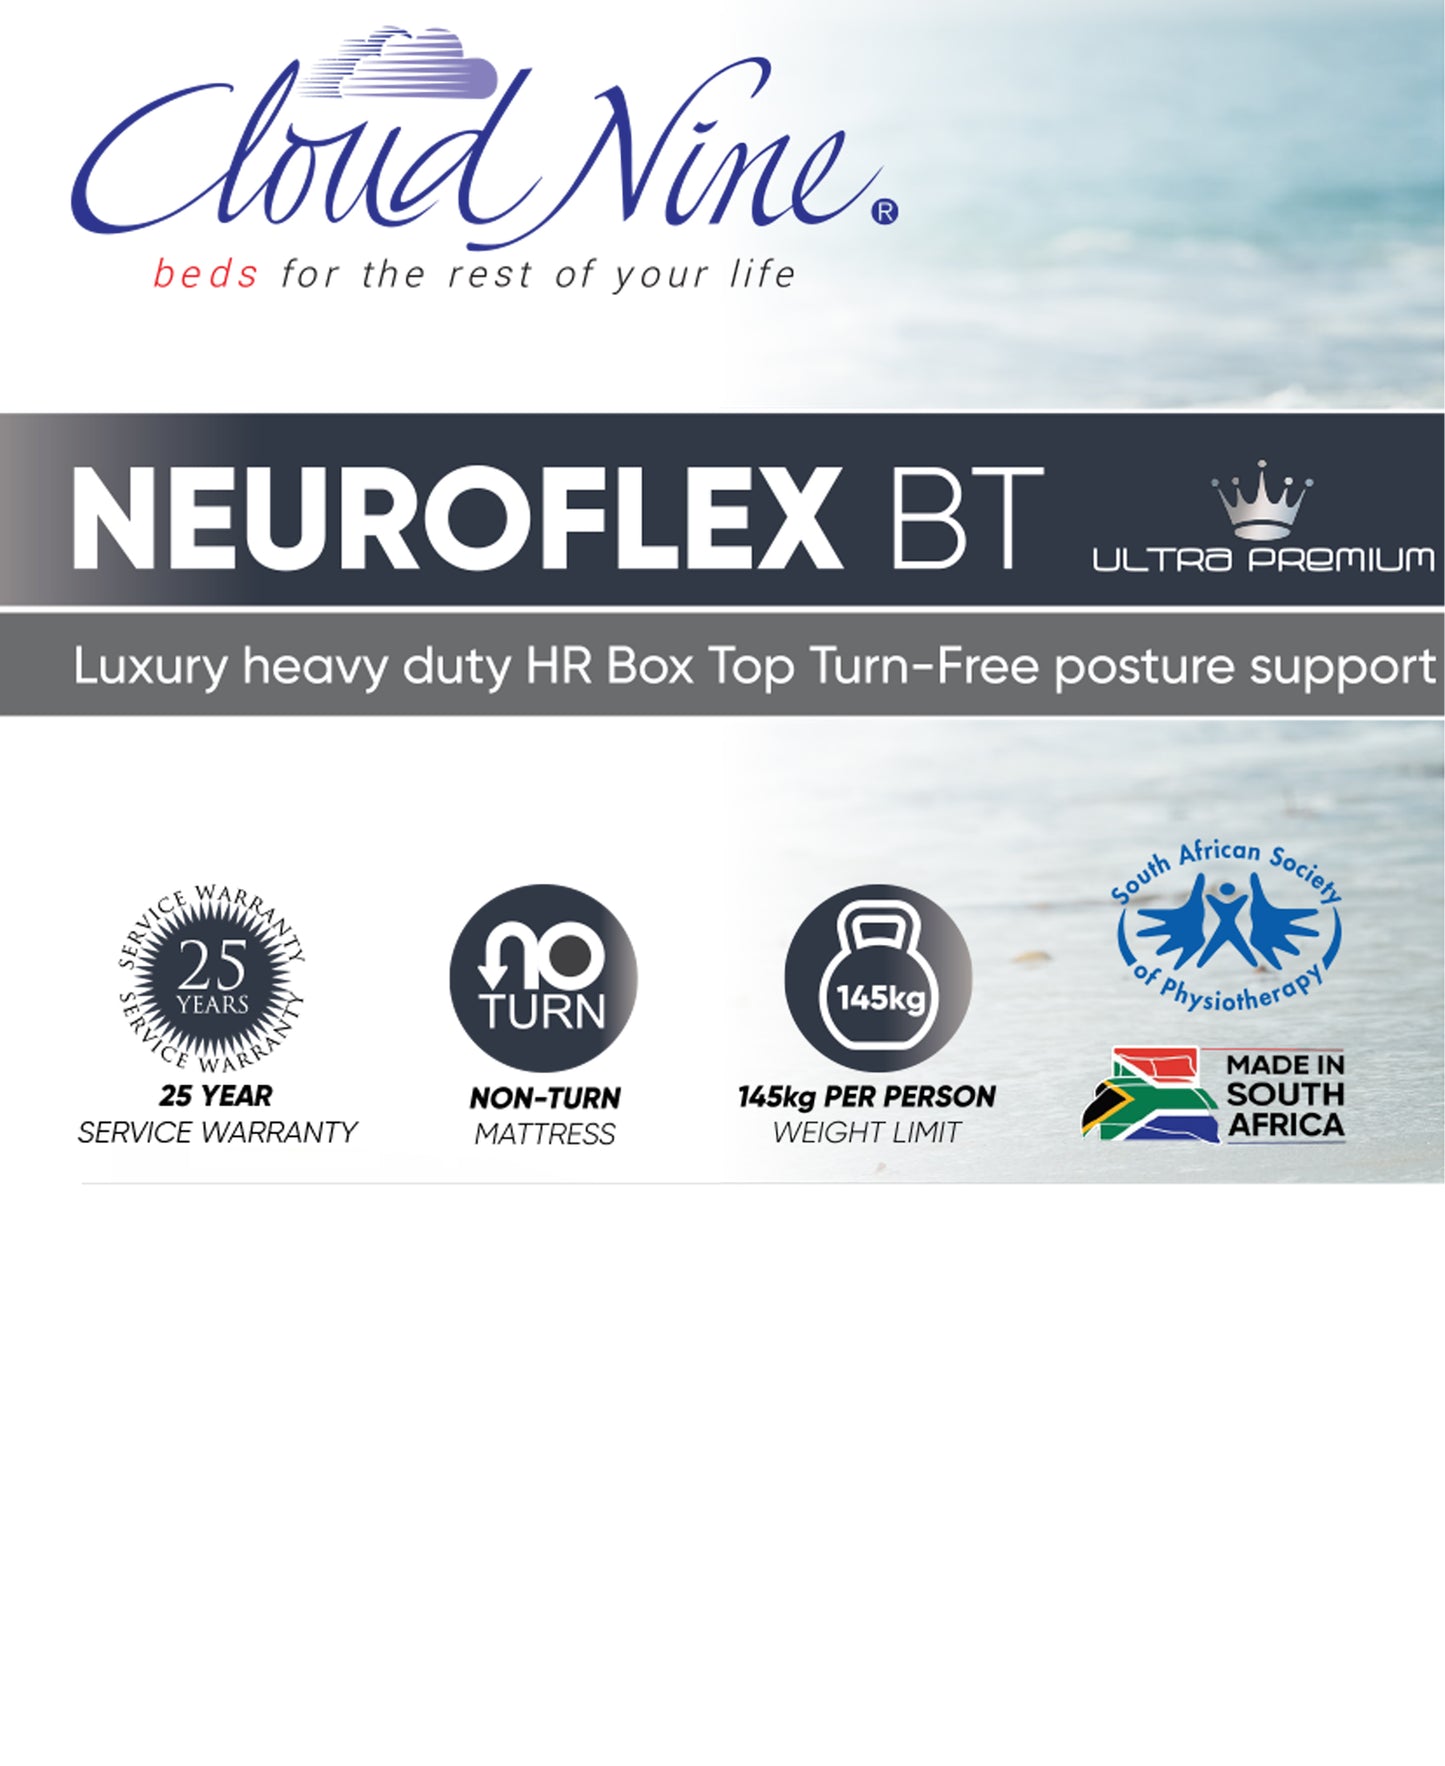 Cloud Nine Neuroflex BT Mattress